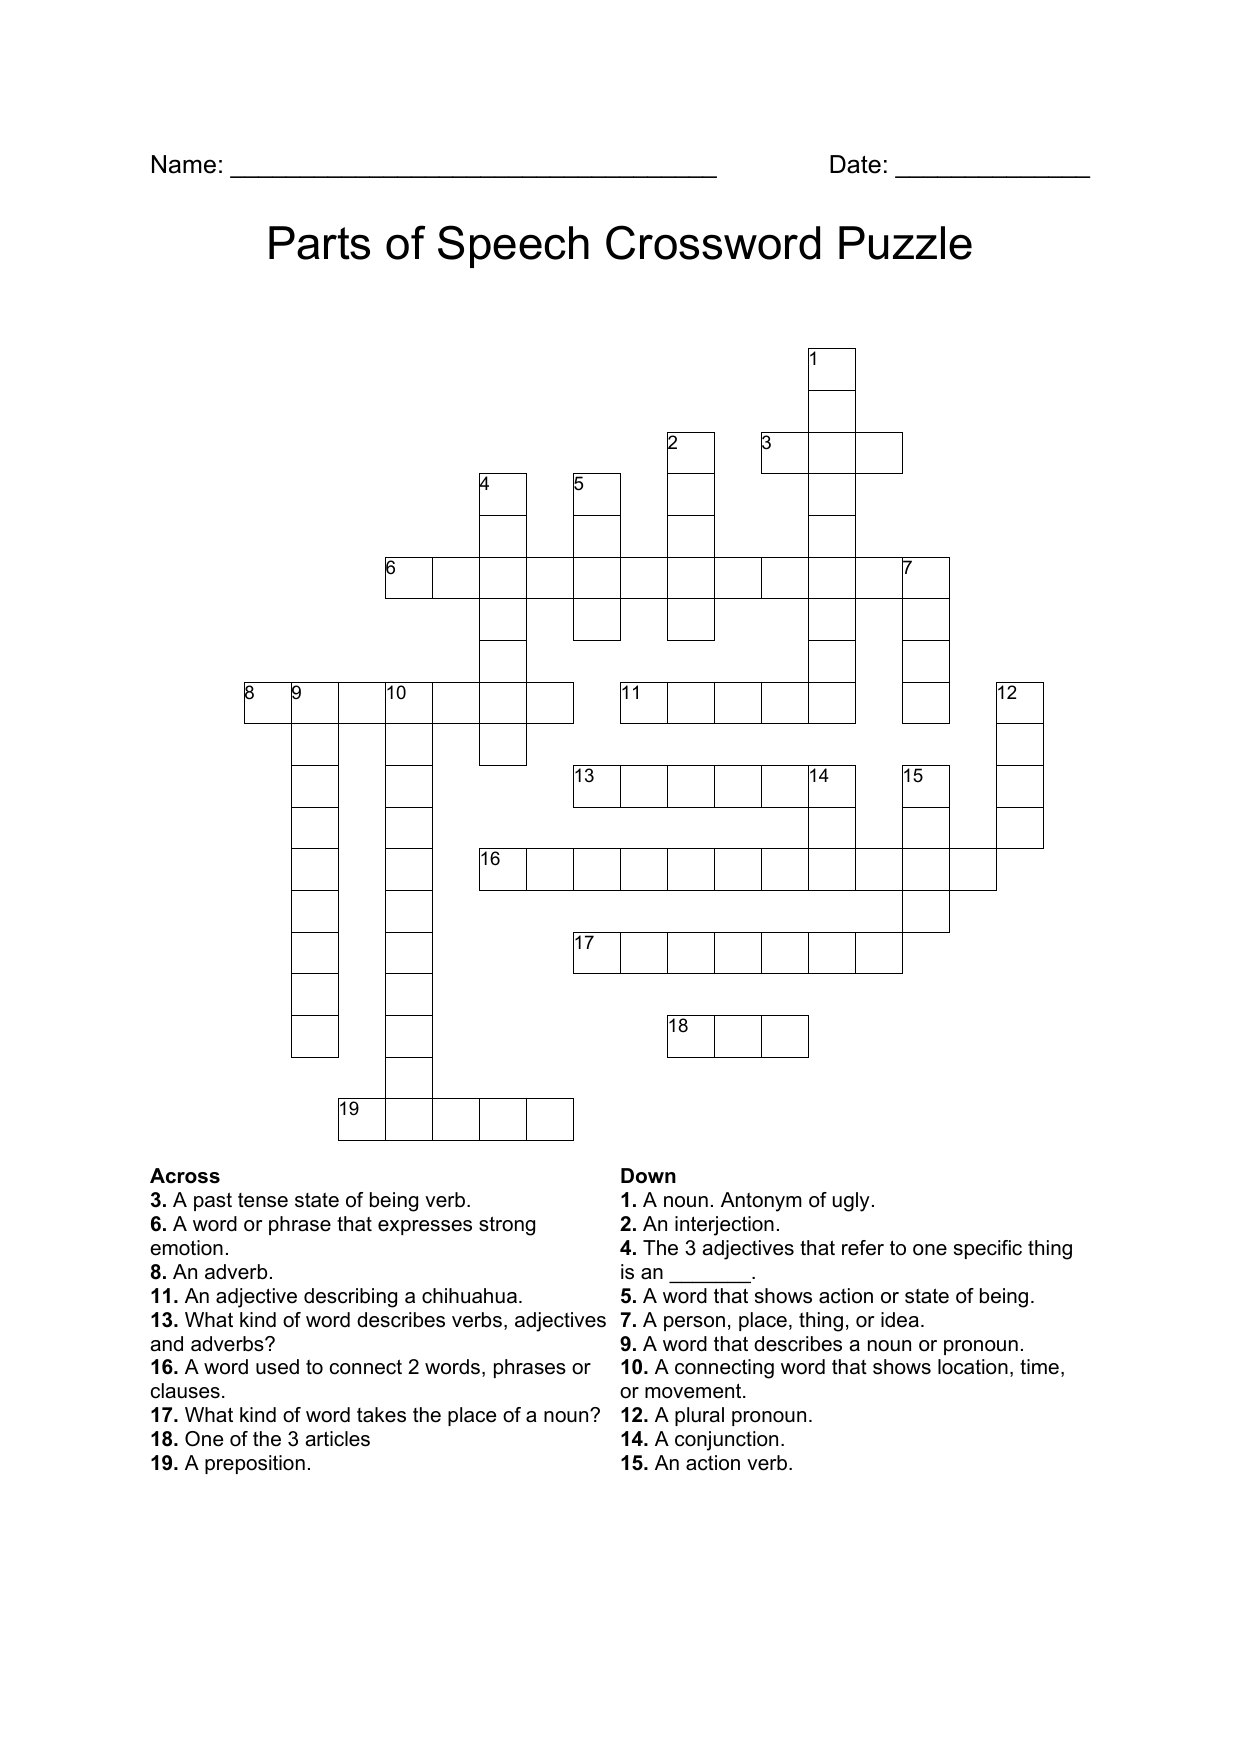 make an impromptu speech crossword clue